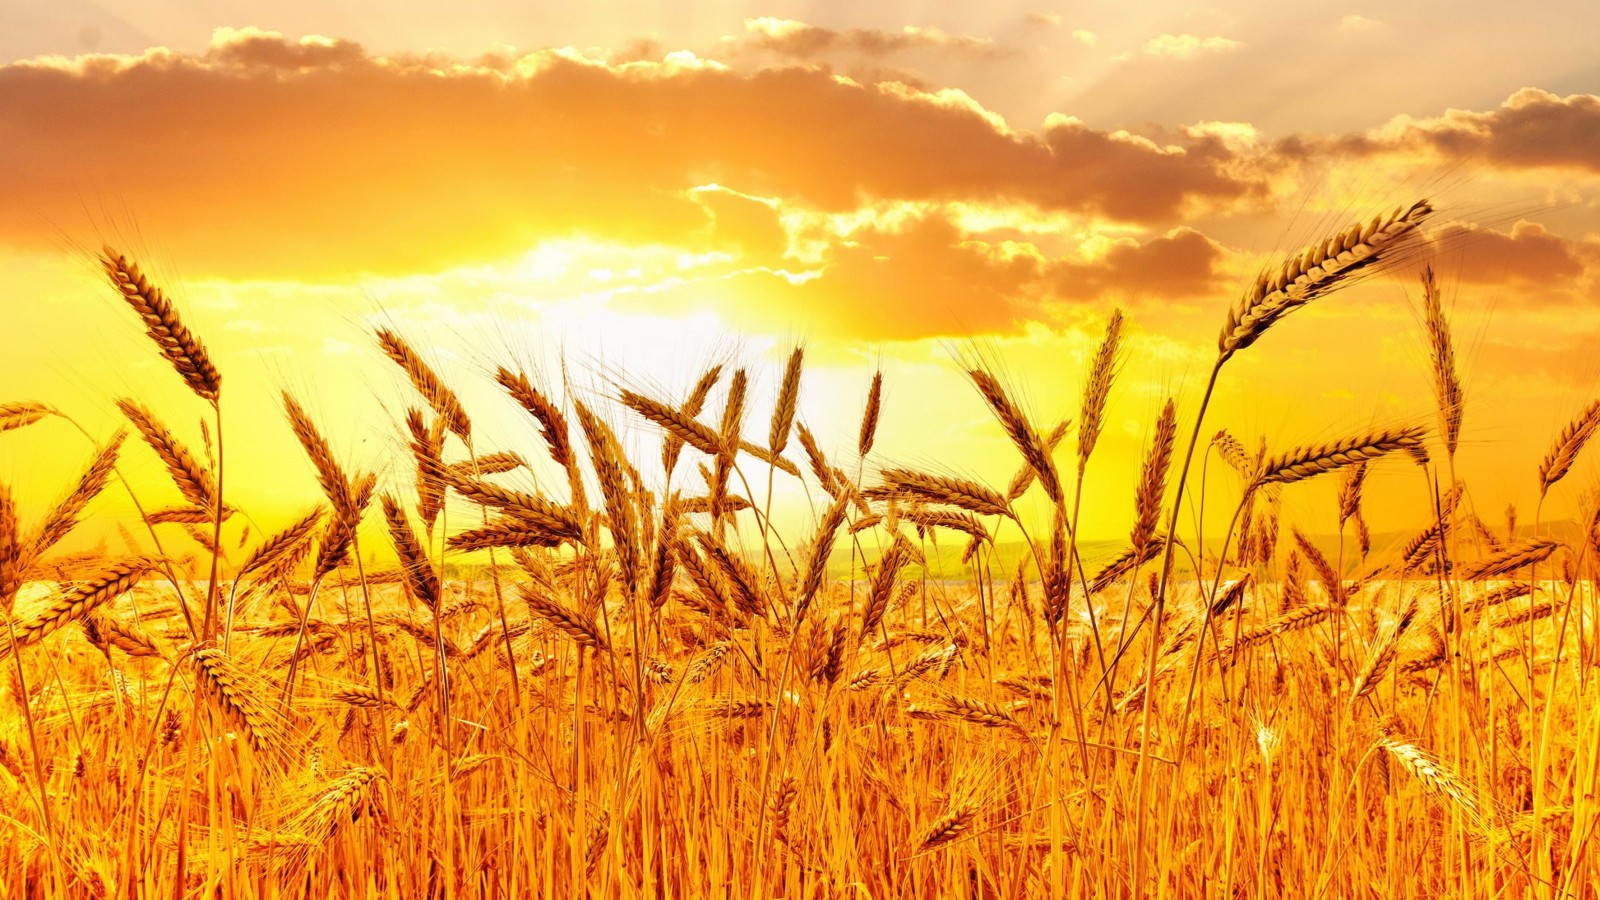 Golden Wheat Field At Sunset Wallpaper for Desktop 1600x900